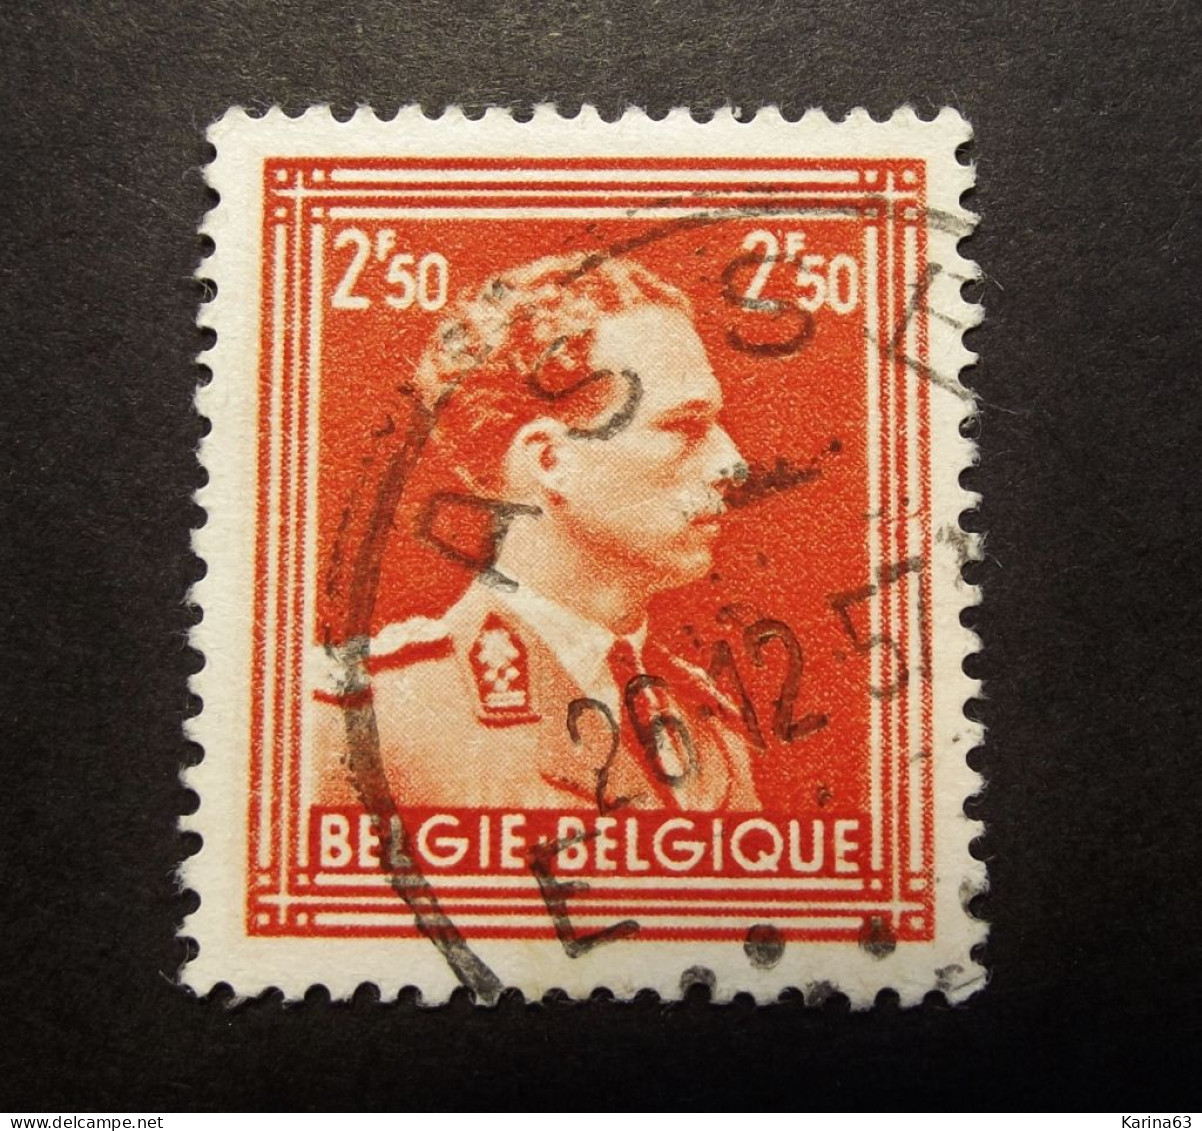 Belgie Belgique - 1951-  OPB/COB  N° 886  - 2 Fr 50  - Obl.  -  ASSE - 1957 - Used Stamps